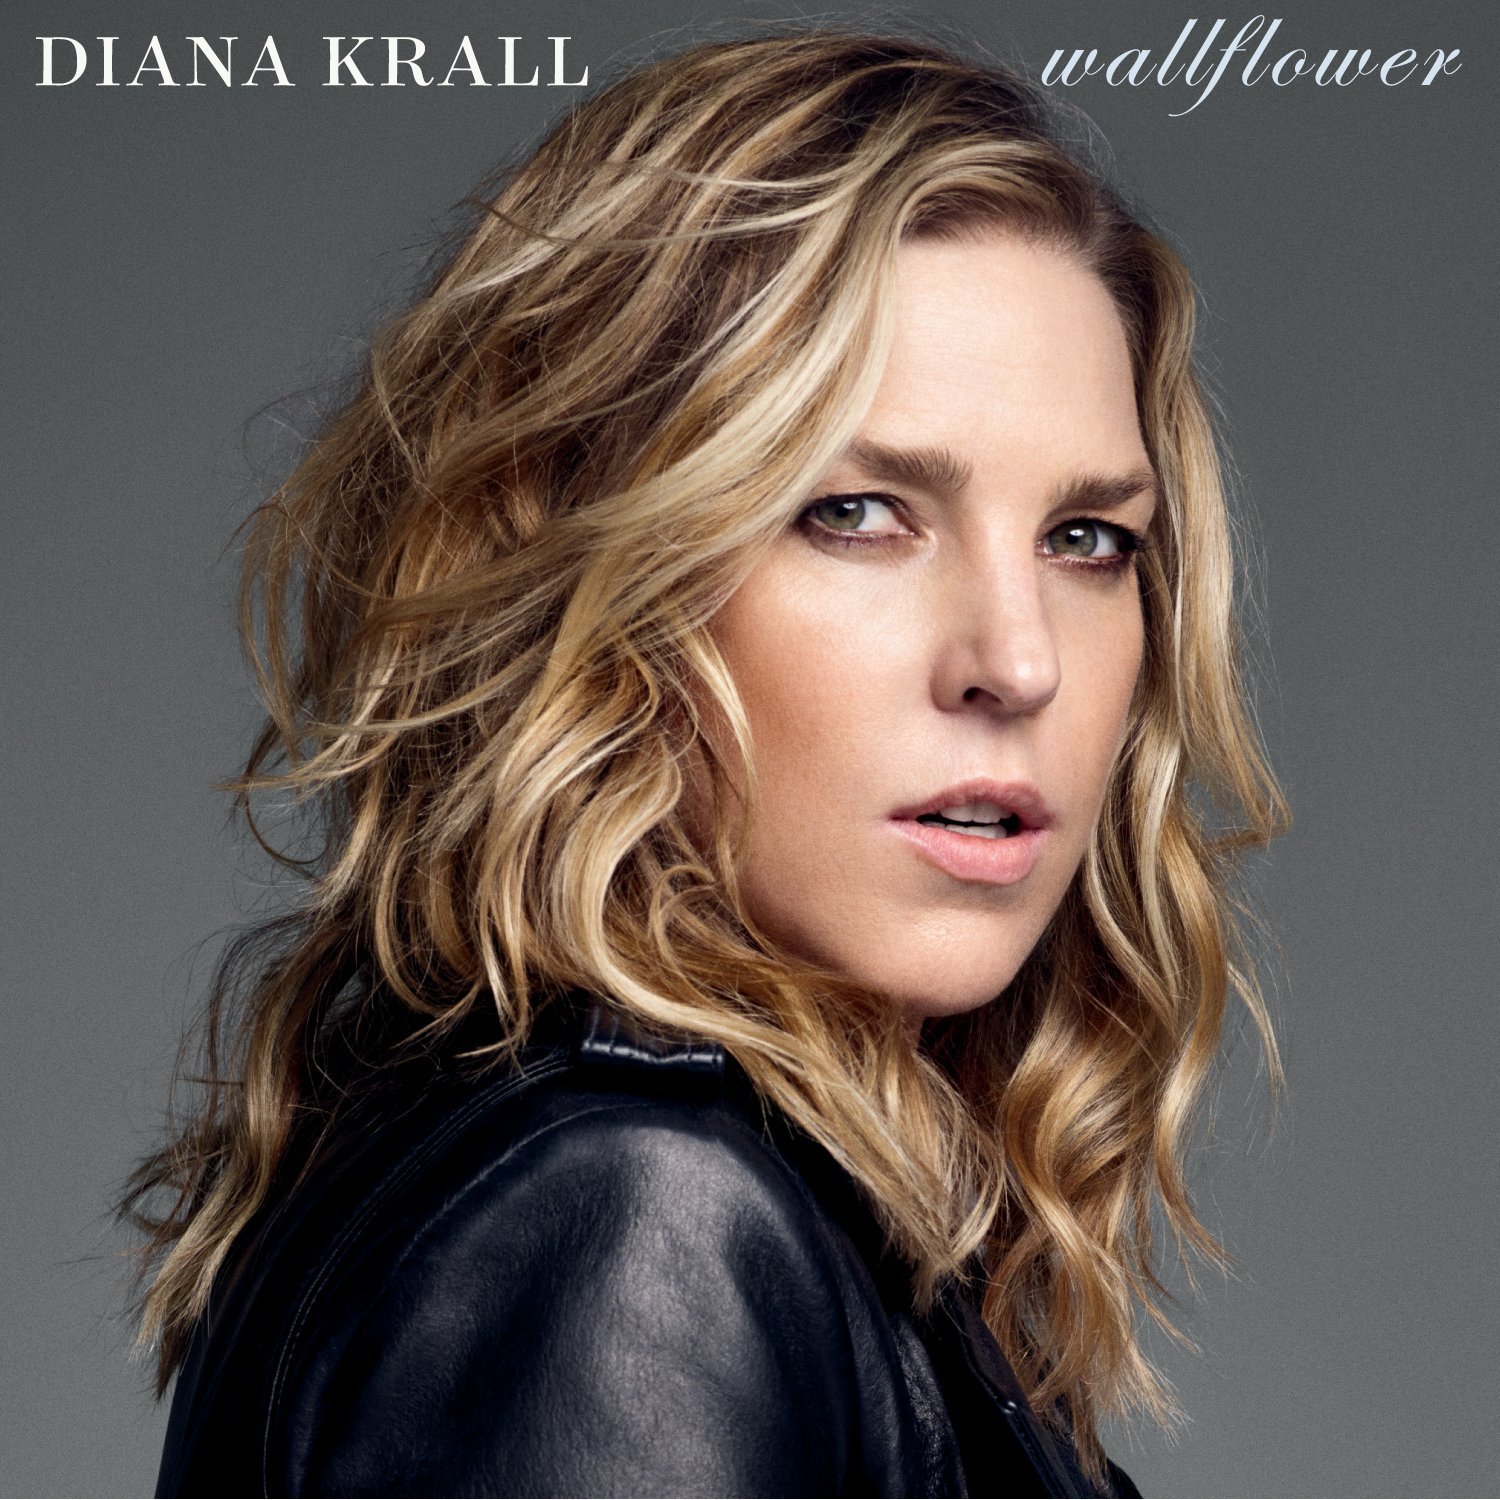 Diana Krall, nuevo álbum “Wallflower” a la venta a partir del 3 de febrero